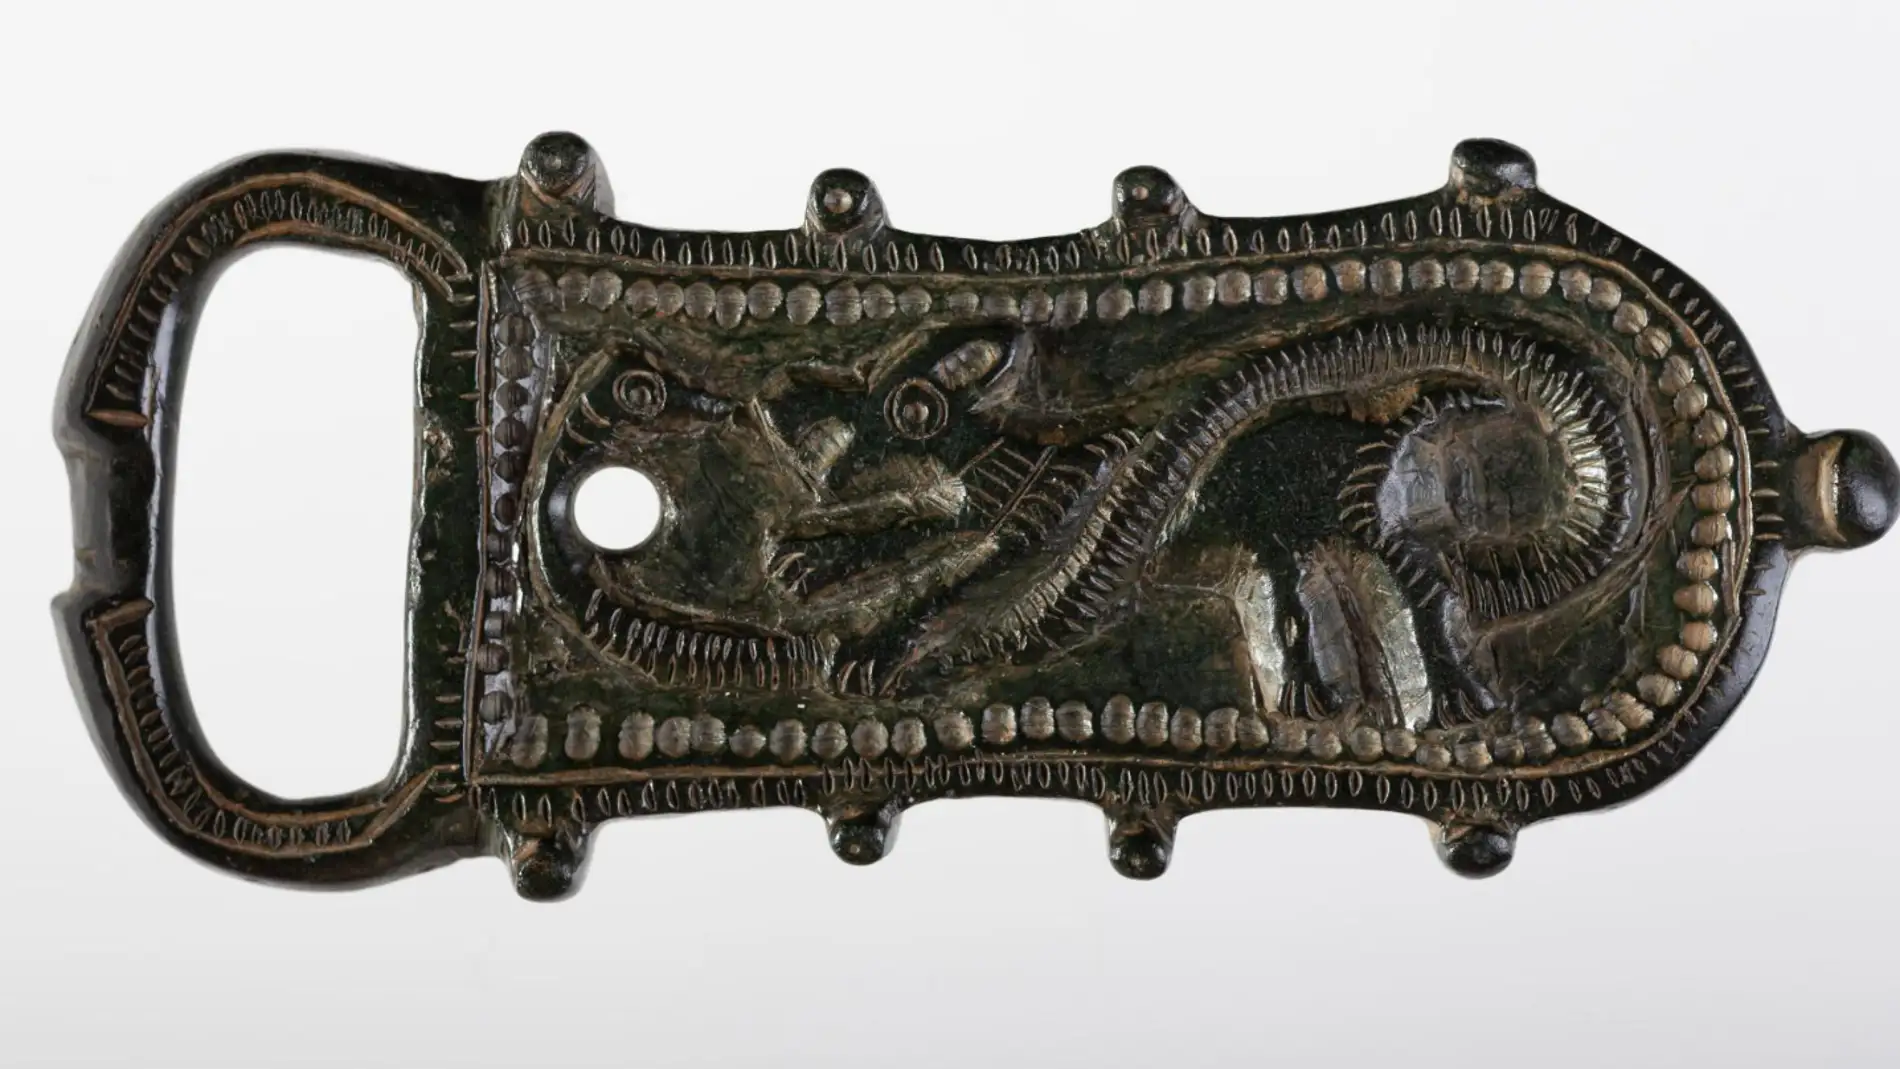 Broche del S. VII procedente de León y parte de la colección del Museo Arqueológico Nacional